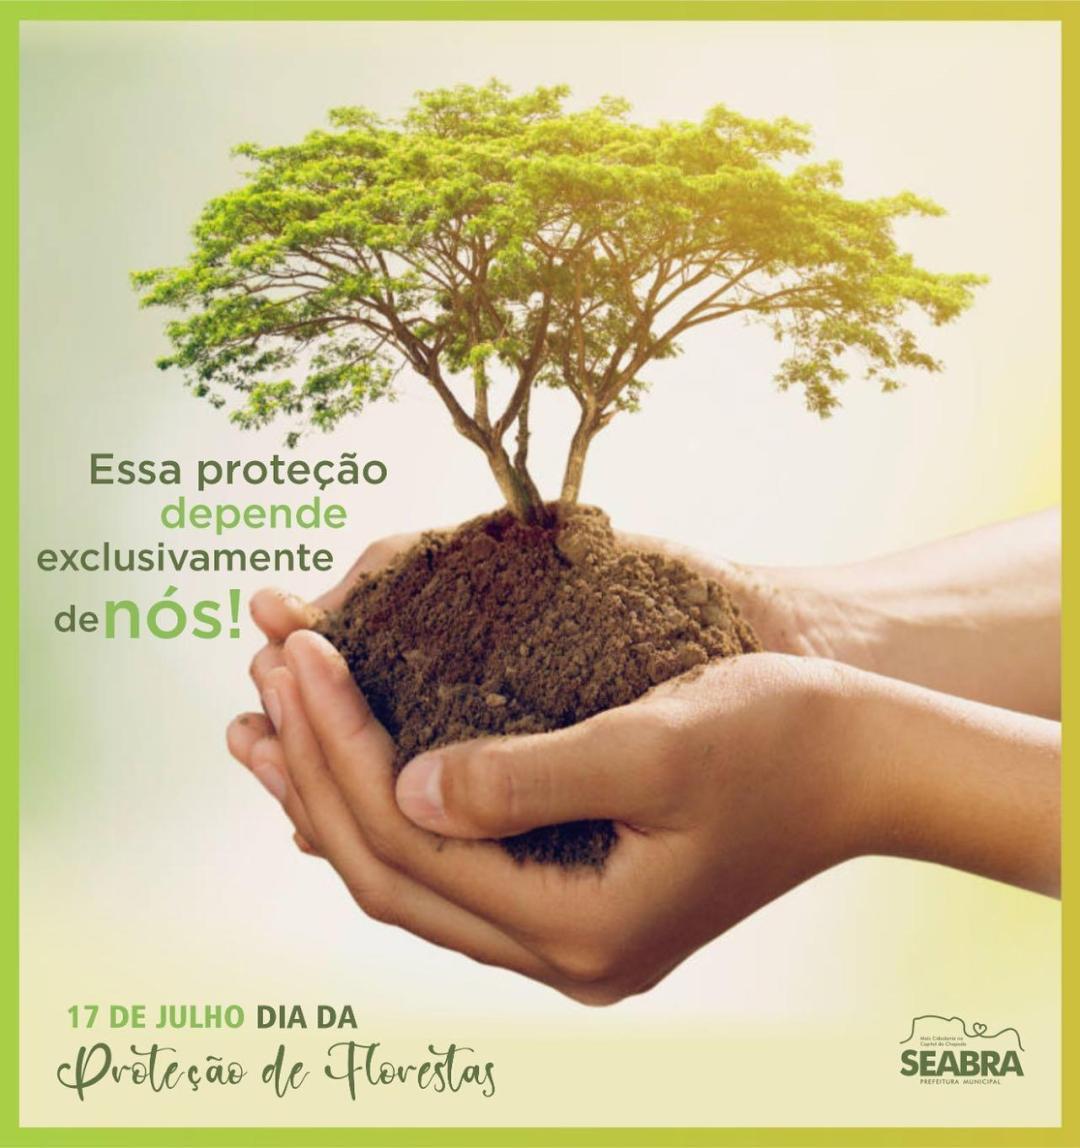 O Dia de Proteção às Florestas é comemorado anualmente em 17 de julho.